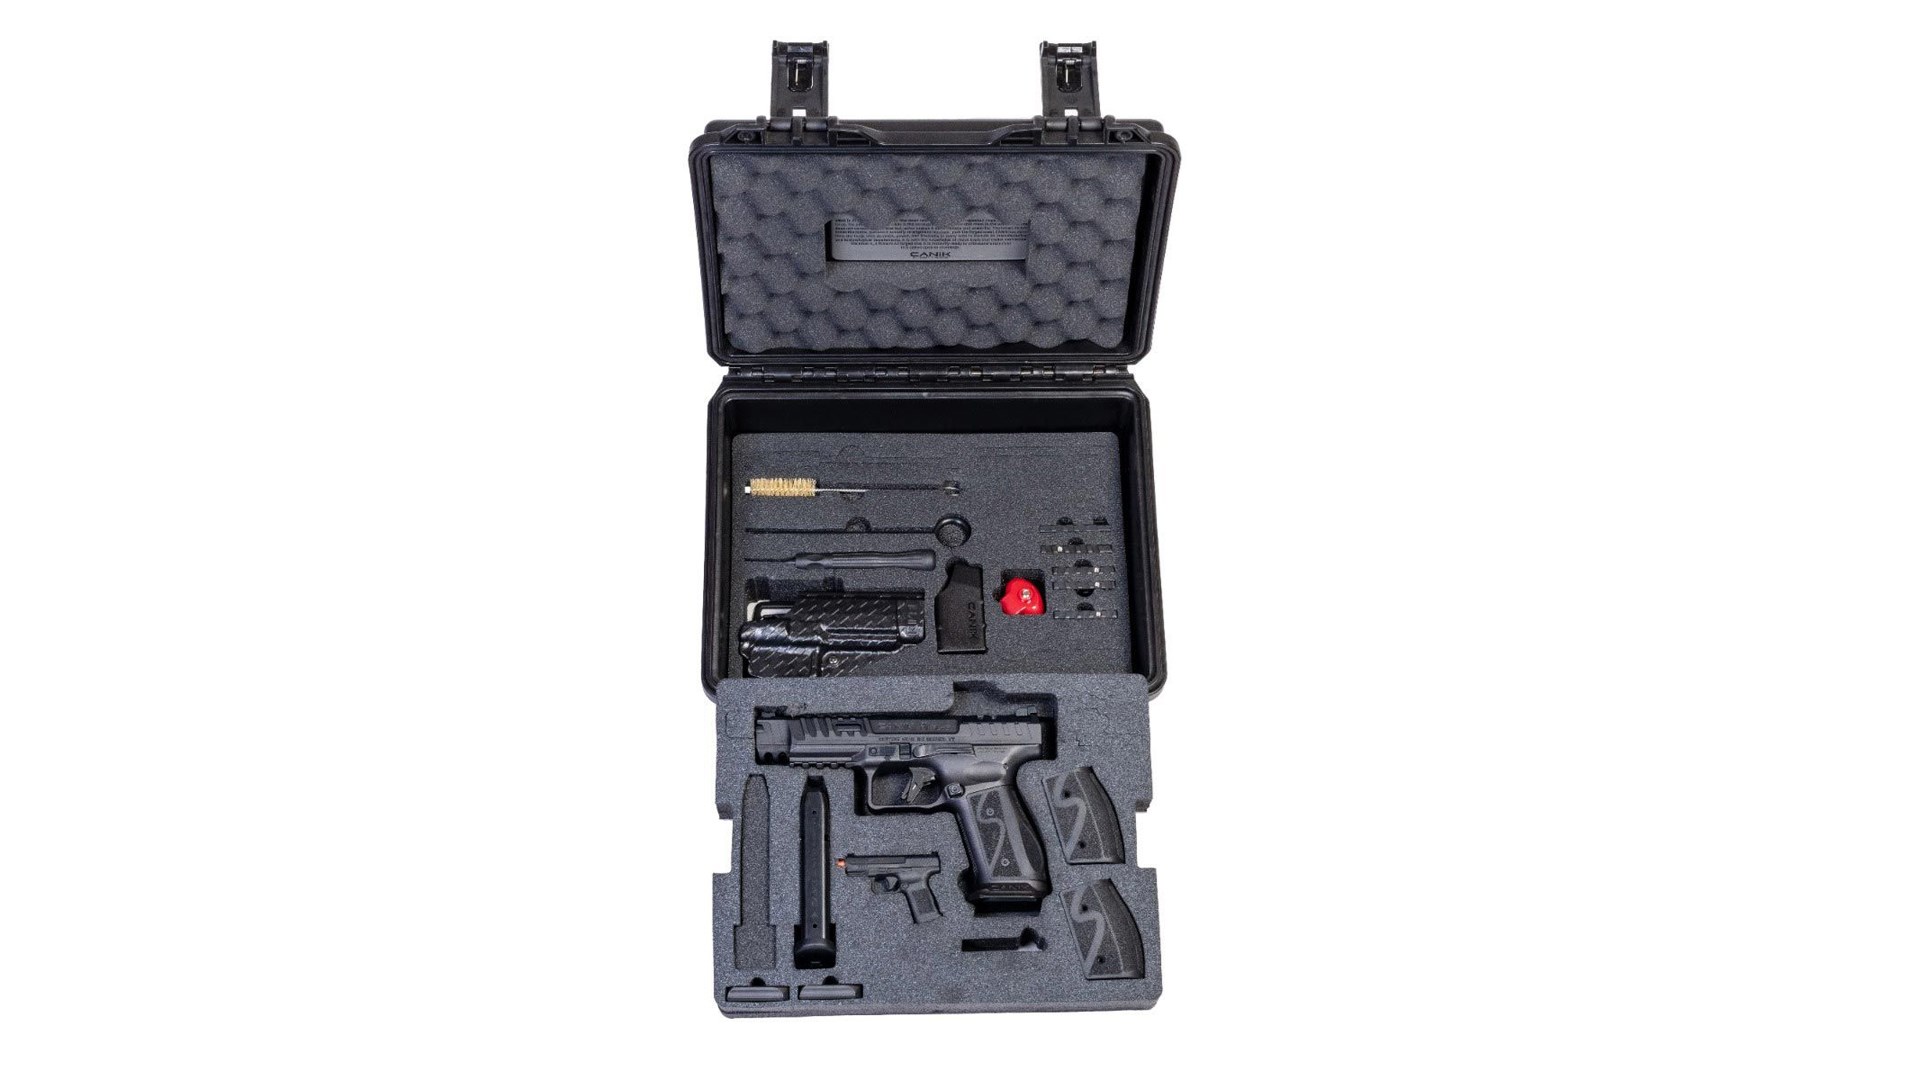 Canik SFx Rival-S pistol shown inside a foam-lined black hard-sided travel case.